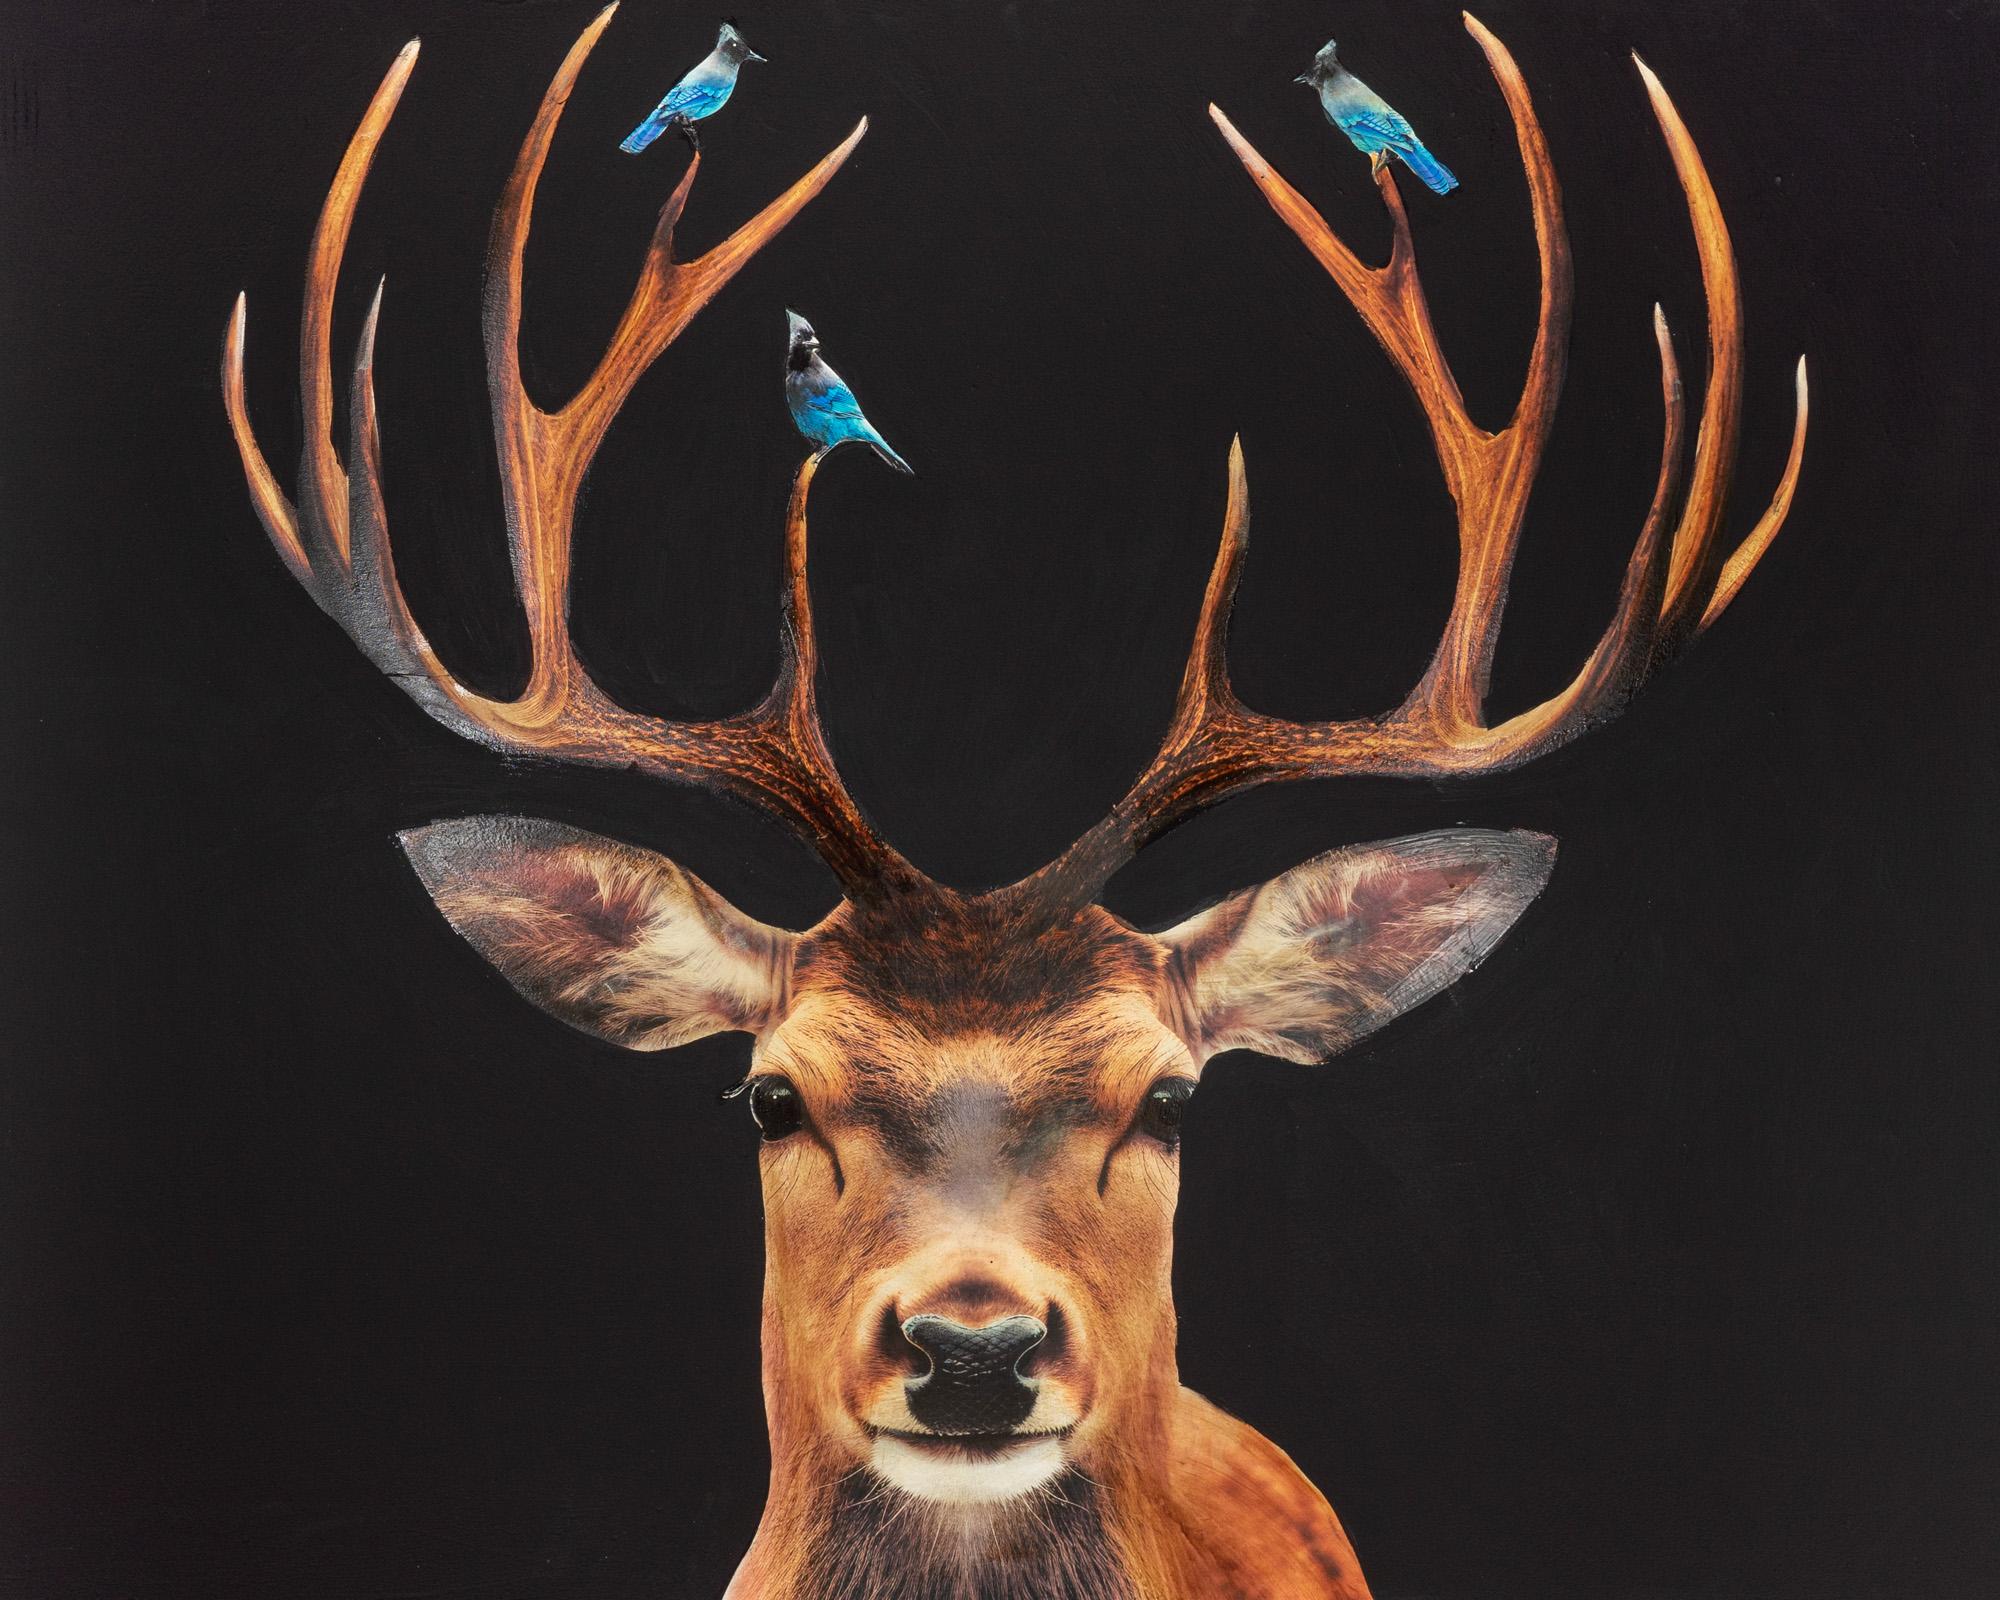 Figurative Painting Anke Schofield - "Blue Birds" Collage contemporain de cerfs et d'oiseaux Mixed Media sur panneau 